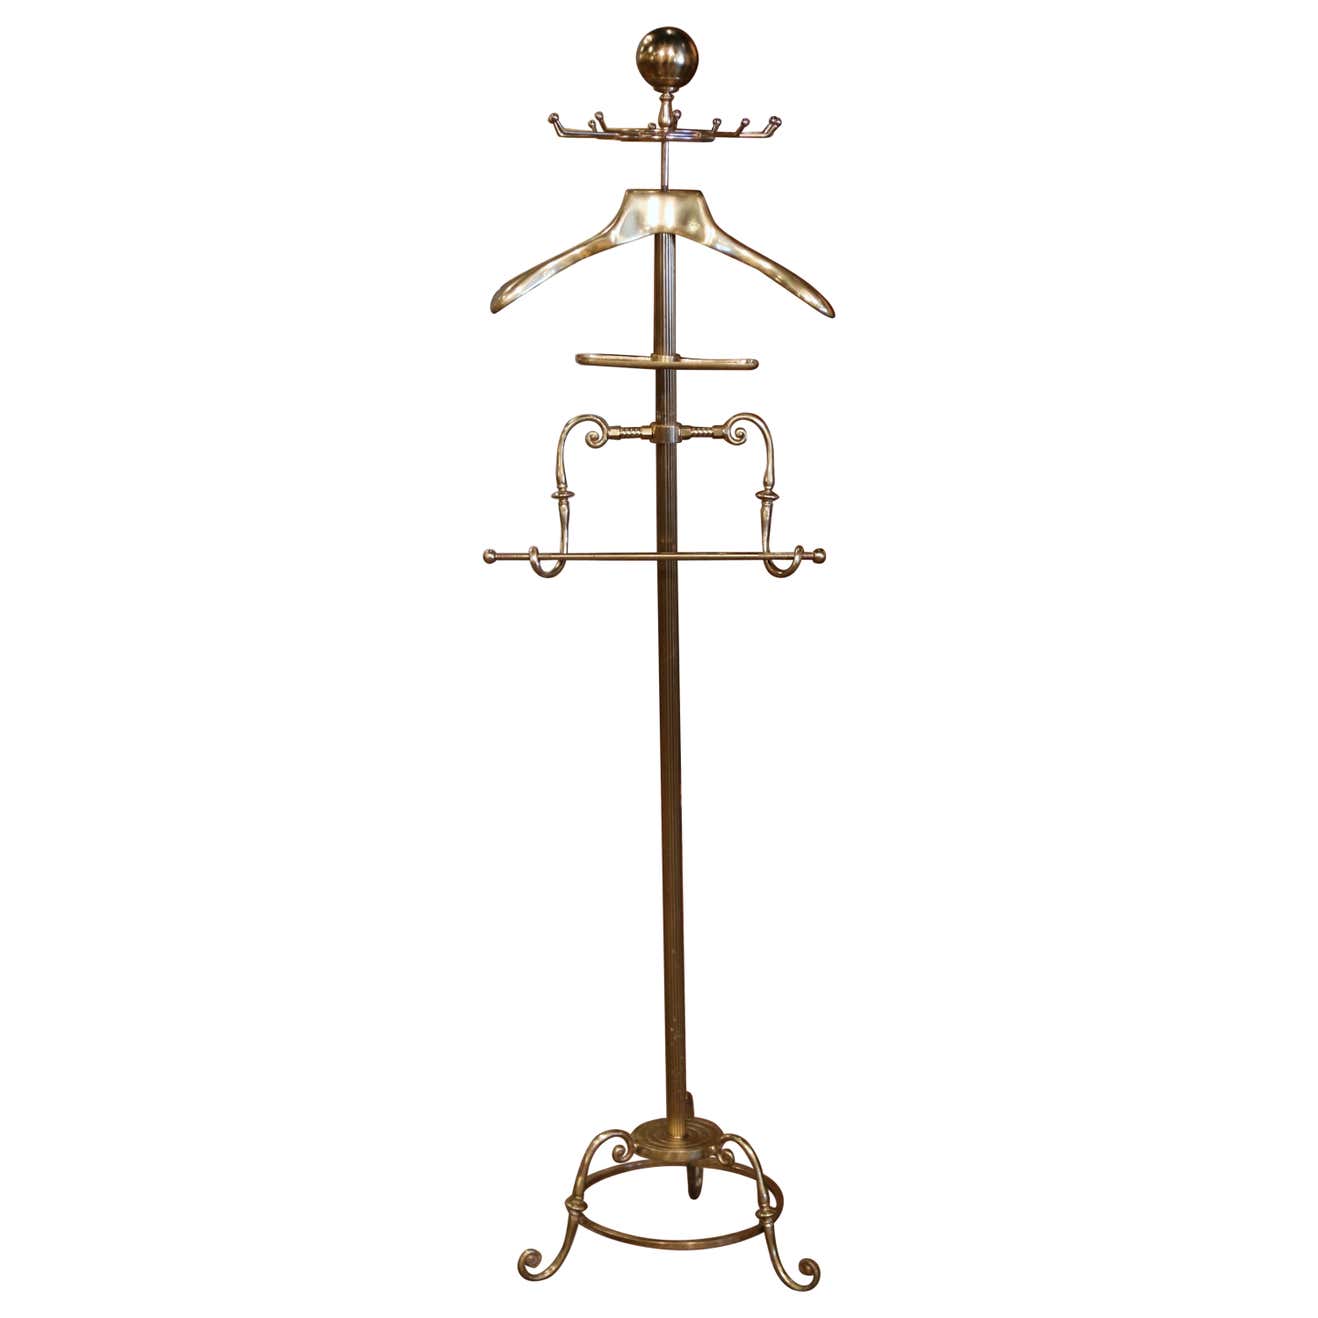 Platter & Plate Easels - Decorative Brass Stands, Platter Hangers